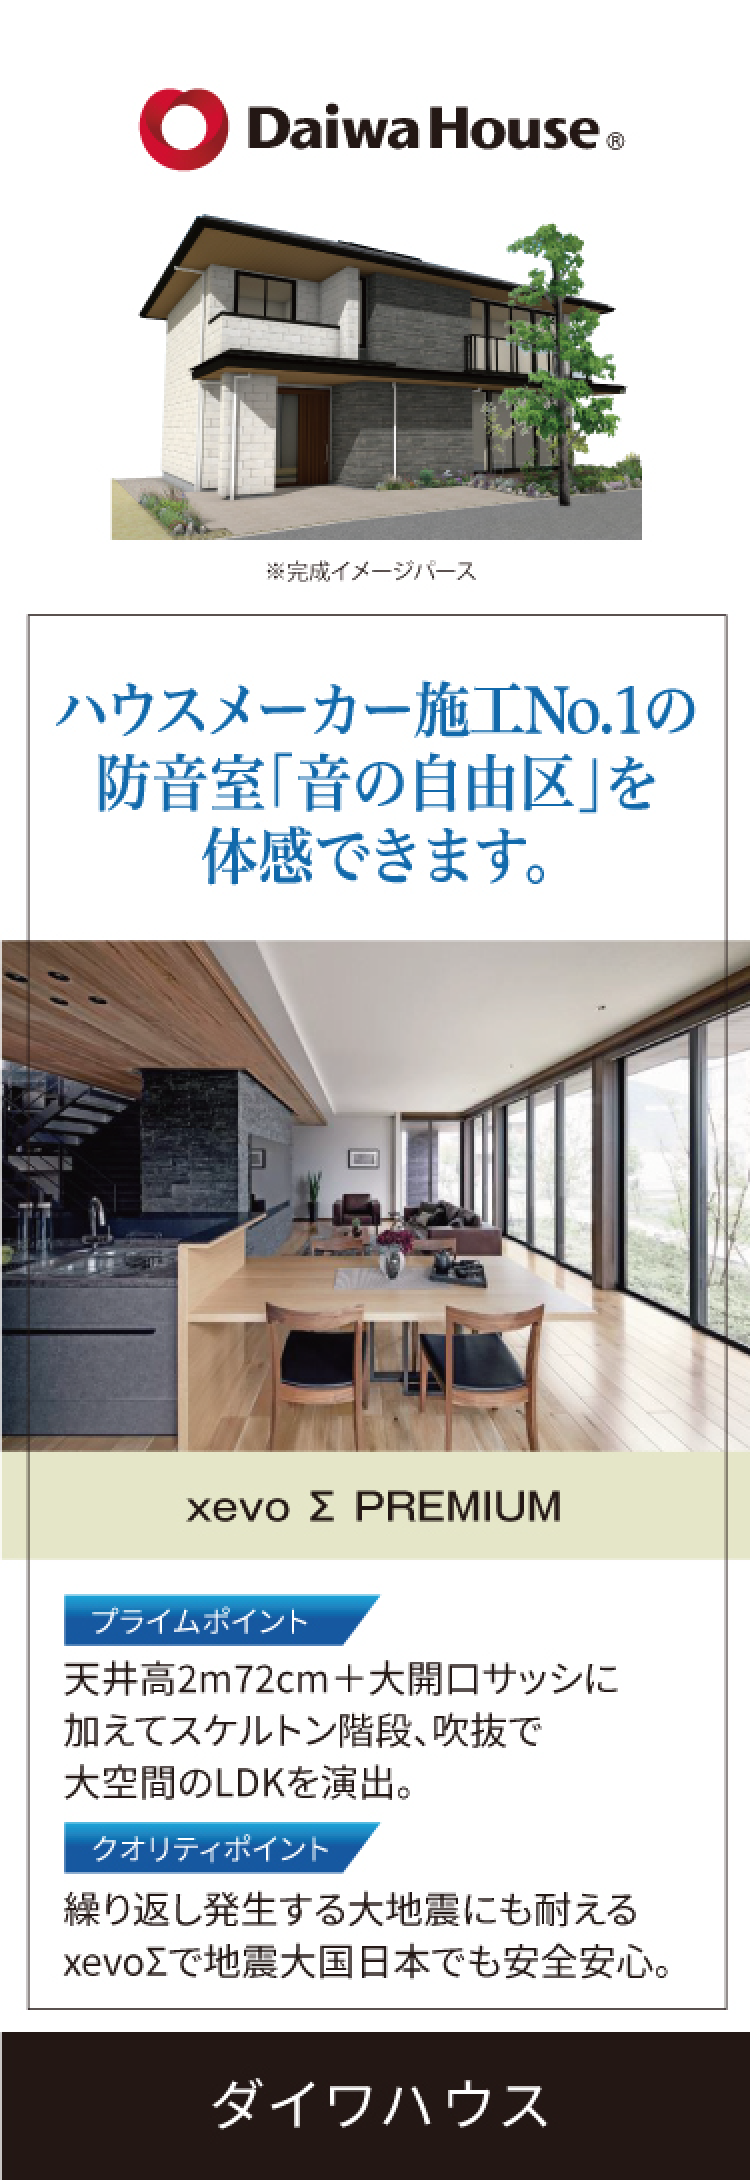 Daiwa House ｜ ハウスメーカー施工No.1の防音室「音の自由区」を体感できます。